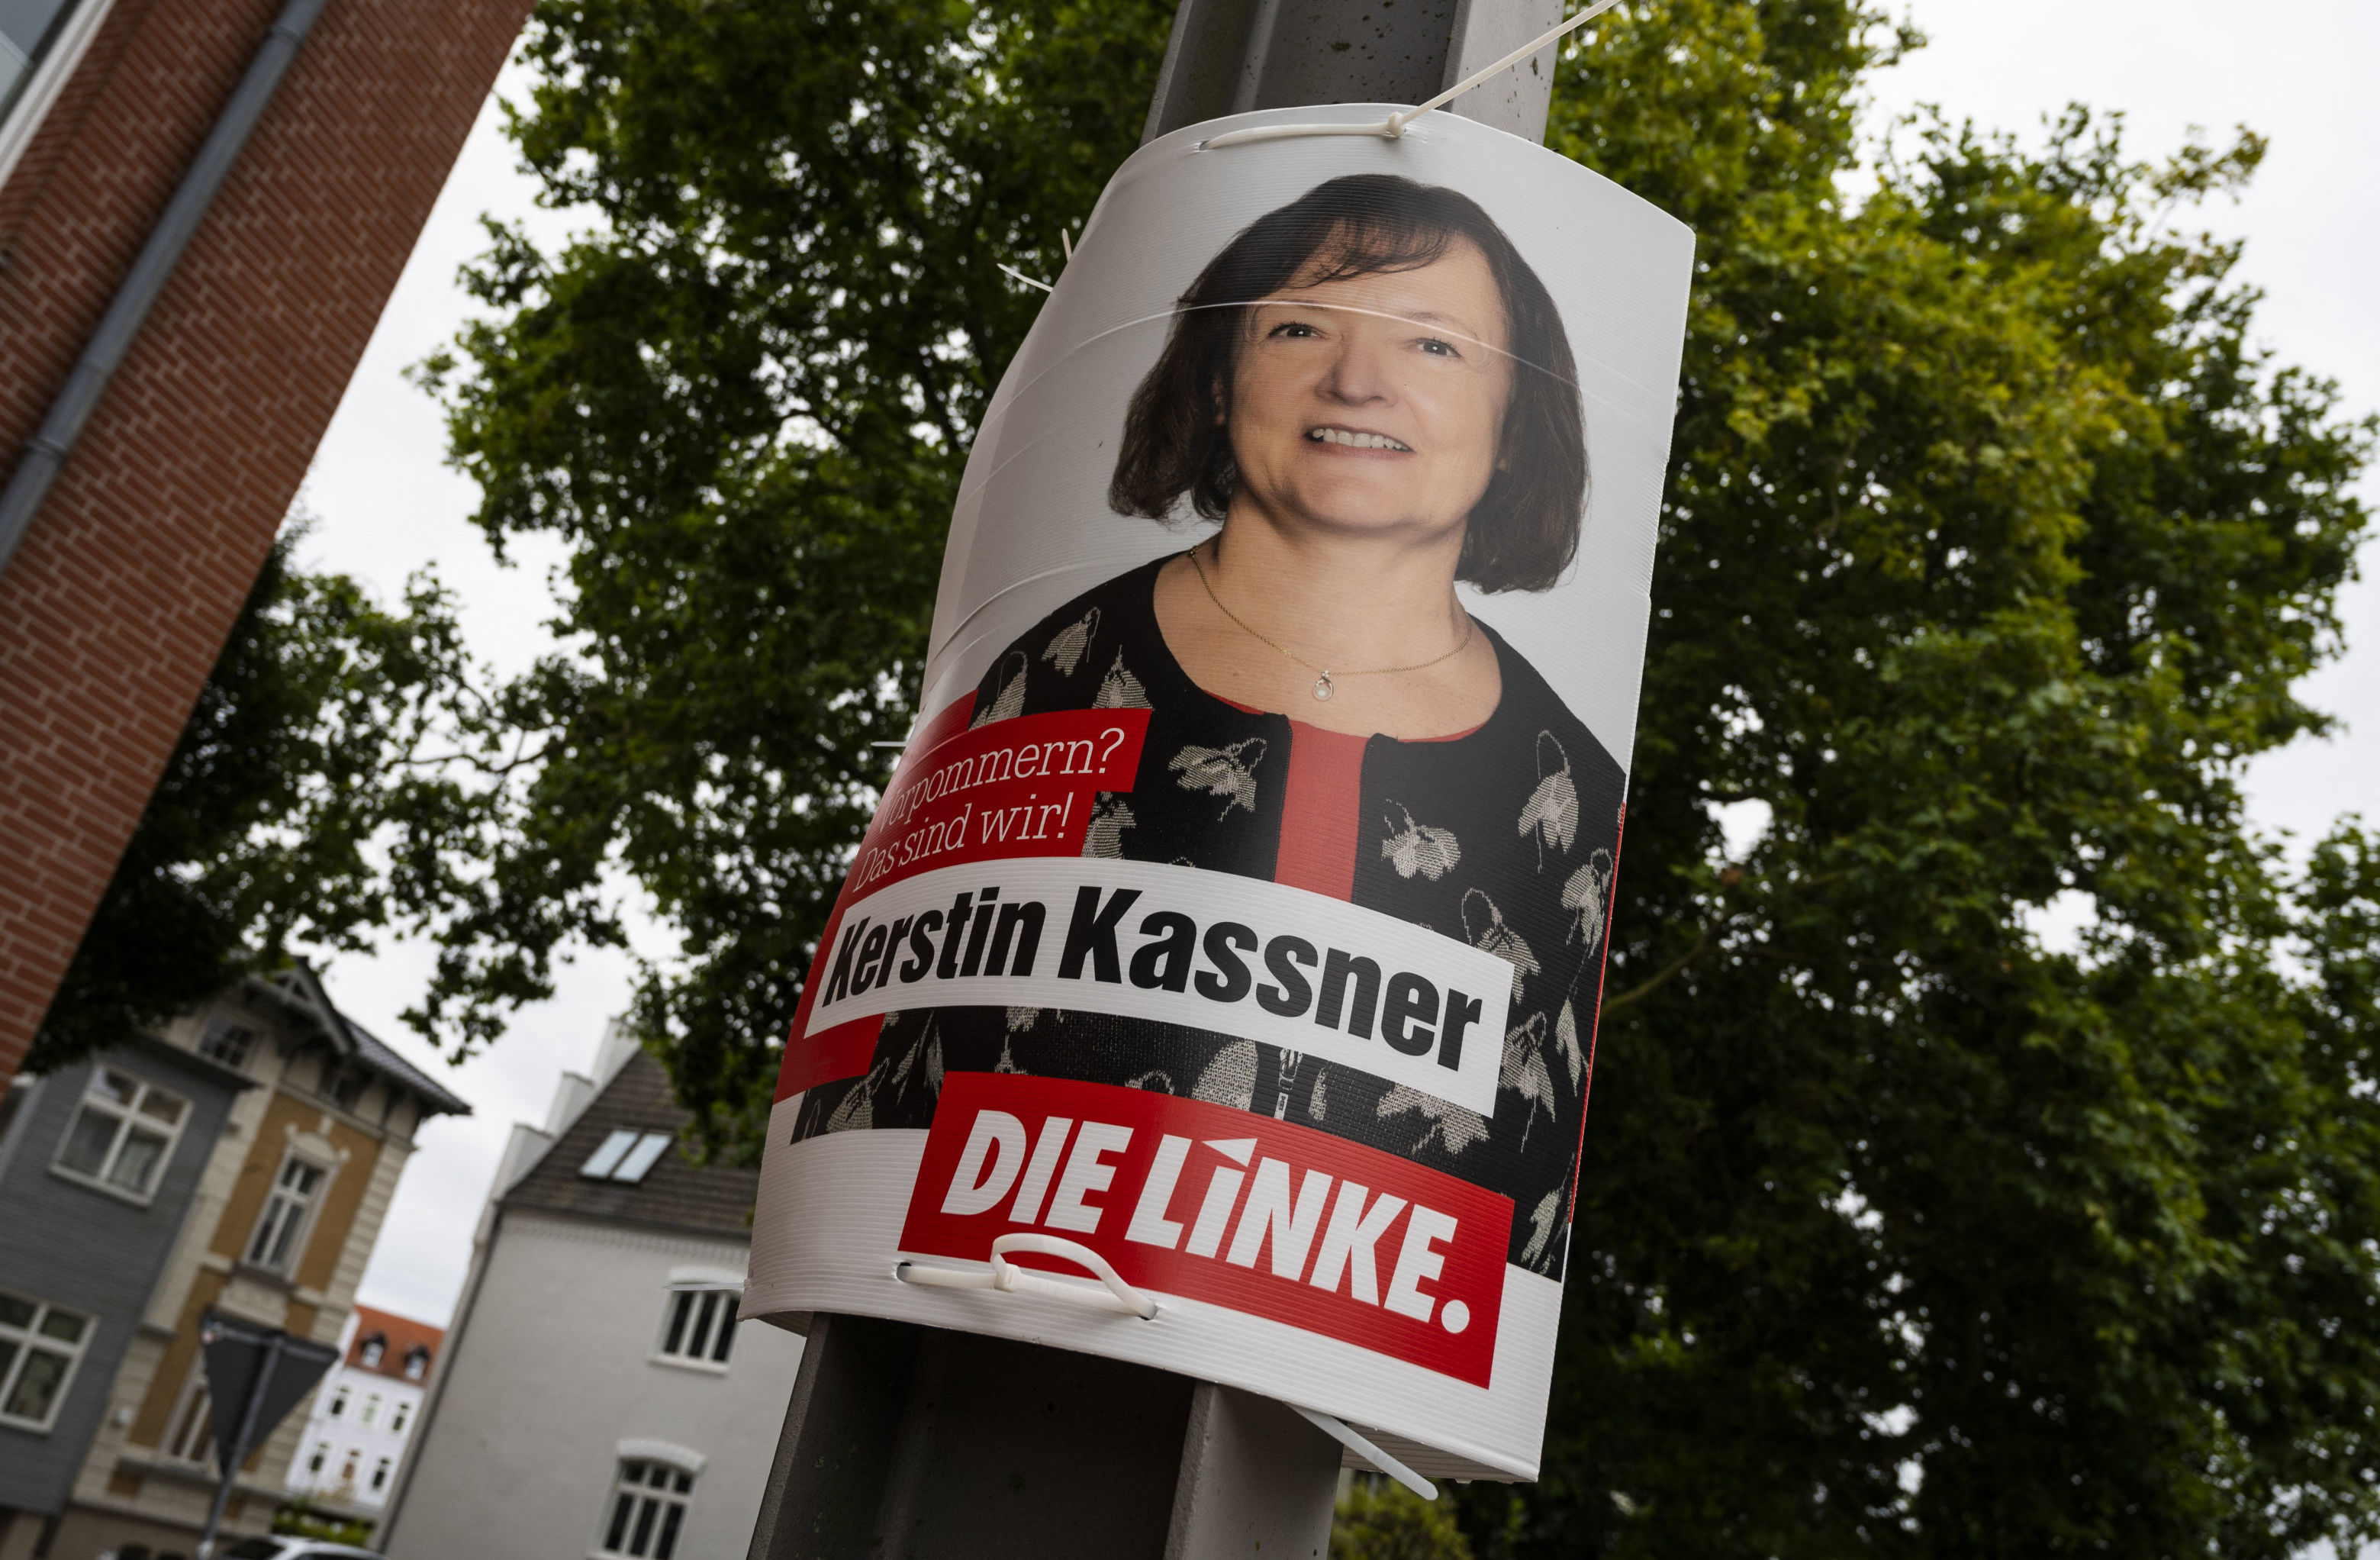 Постеры партии "Левые" в рамках избирательной кампании в Германии, 19 сентября 2021